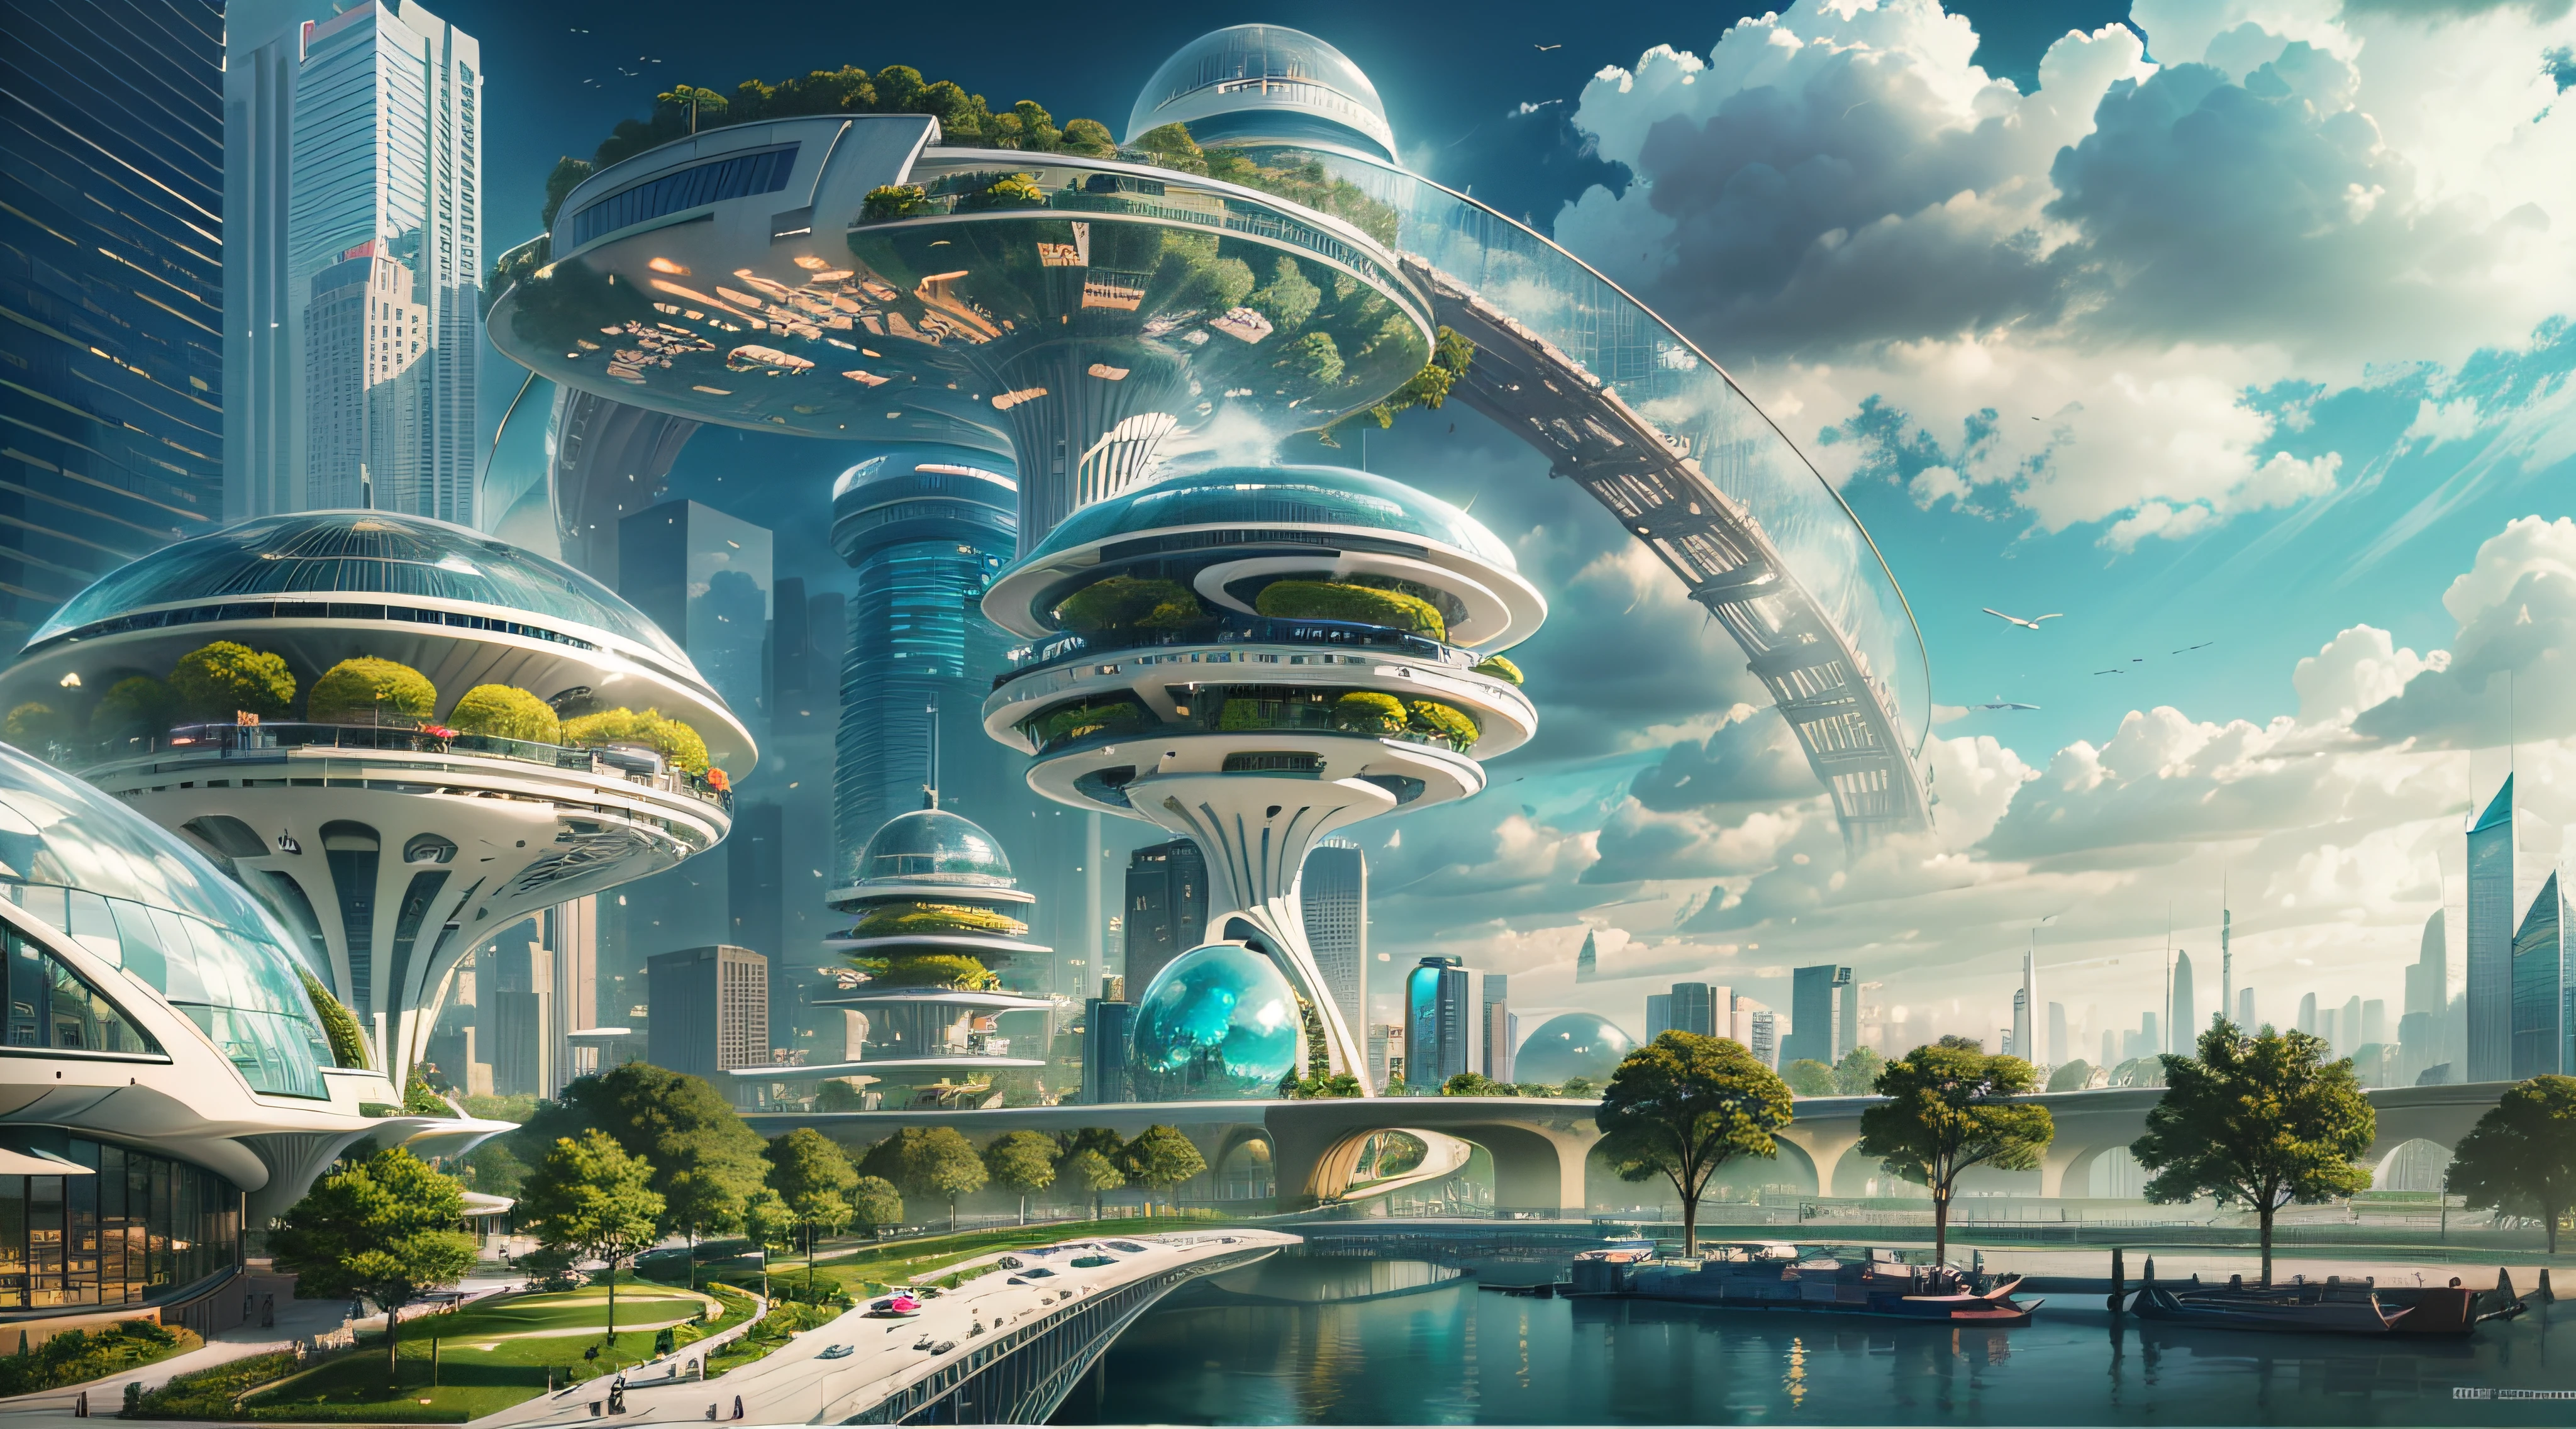 (最好的质量,4k,8千,高分辨率,杰作:1.2),极其详细,(实际的,真实感,照片般逼真:1.37),未来派漂浮城市,未来科技,巨大的城市高科技平板平台,飞艇,漂浮在空中,未来城市,周围的小型飞艇,高科技半球形平台,彩灯,先进的架构,现代建筑,摩天大楼,访问云,风景秀丽,俯瞰城市,令人印象深刻的设计,与自然完美融合,充满活力的氛围,未来交通系统,暂停停车,透明路径,郁郁葱葱的绿色植物,空中花园,瀑布,壮丽的天际线,水面上的倒影,波光粼粼的河流,建筑创新,未来派摩天大楼,透明穹顶,该建筑的形状很不寻常,高架行人道,令人印象深刻的天际线,发光的灯光,未来科技,简约设计,风景名胜区,全景,穿云塔,鲜艳的色彩,史诗般的日出,史诗般的日落,炫目的灯光显示,神奇的氛围,未来城市,城市乌托邦,奢华生活方式,创新能源,可持续发展,智慧城市技术,先进的基础设施,宁静的气氛,自然与科技和谐相处,令人惊叹的城市景观,前所未有的城市规划,建筑与自然无缝衔接,高科技大都市,尖端工程奇迹,城市生活的未来,富有远见的建筑理念,节能建筑,与环境和谐相处,漂浮在云层之上的城市,乌托邦梦想照进现实,可能性是无止境,先进的交通网络,绿色能源整合,创新材料,令人印象深刻的全息显示,先进的通讯系统,令人惊叹的鸟瞰图,安静祥和的环境,现代主义美学,空灵之美